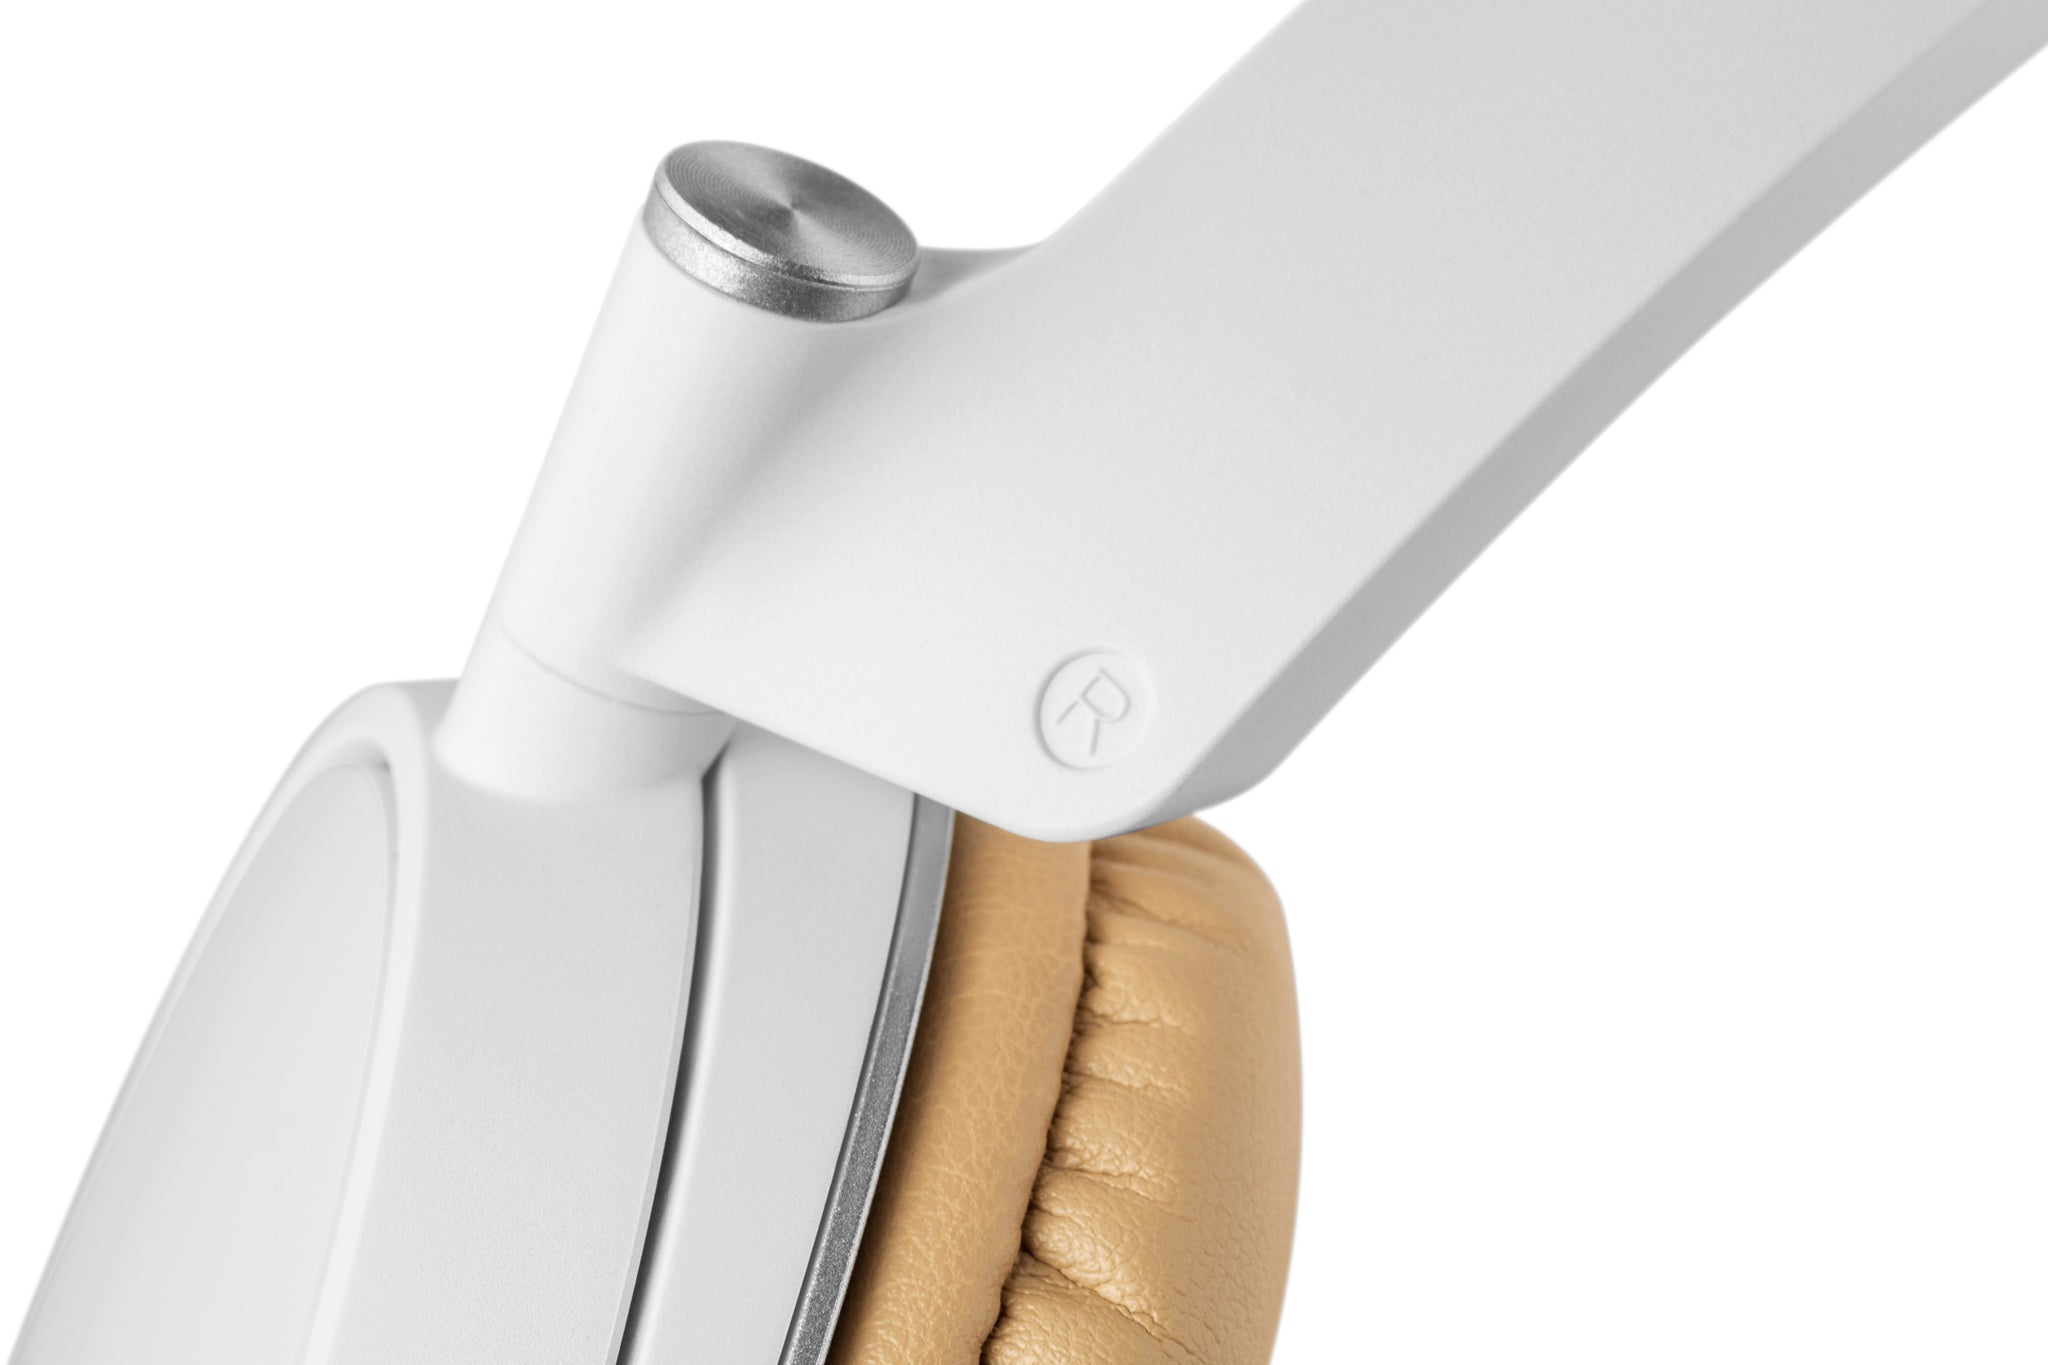 Edifier P841 Premium Headphones With Microphone - White